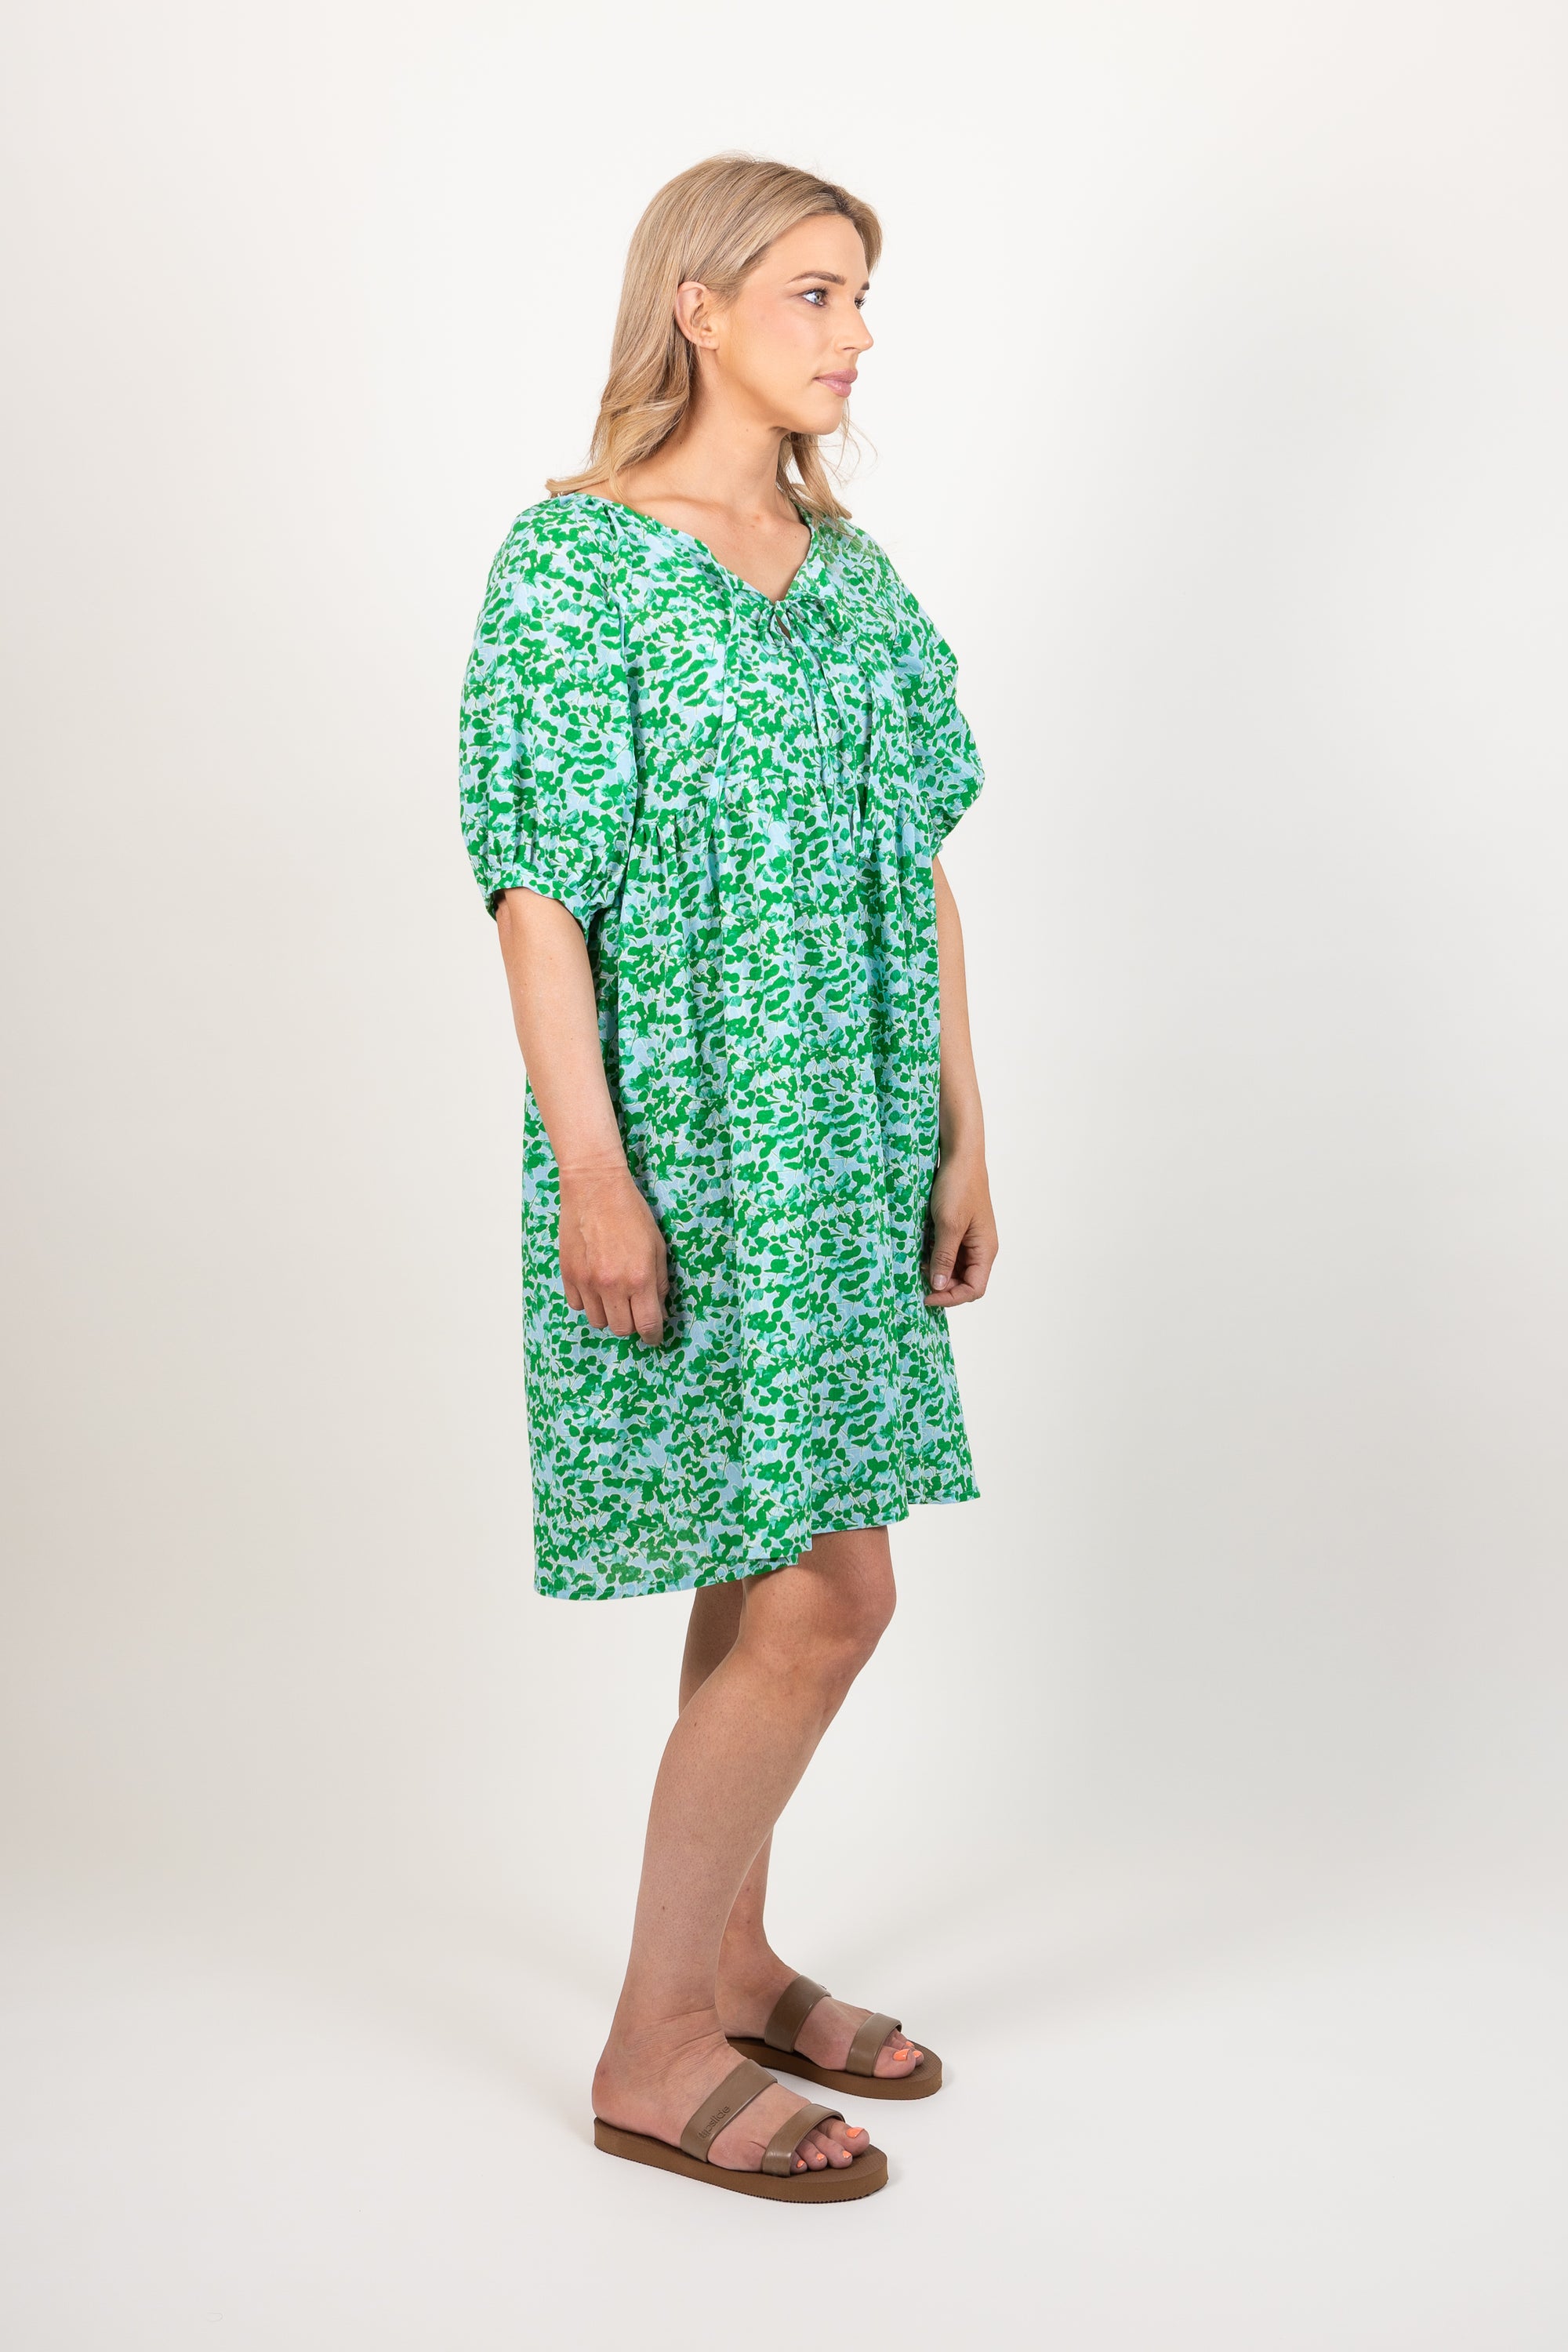 Ames Store Summer Cotton Seersucker Dress Green Blue Print